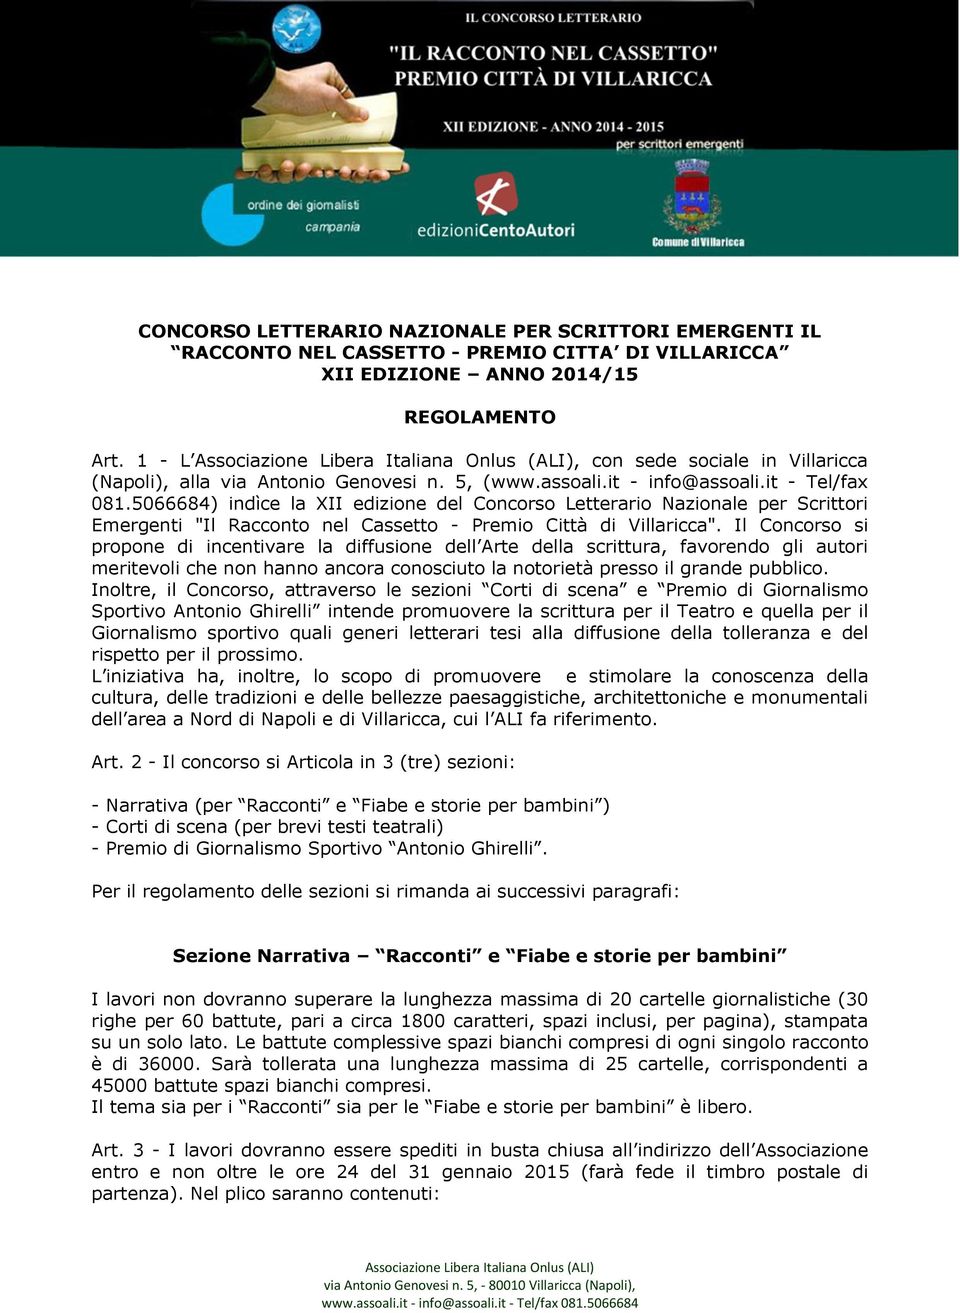 5066684) indìce la XII edizione del Concorso Letterario Nazionale per Scrittori Emergenti "Il Racconto nel Cassetto - Premio Città di Villaricca".